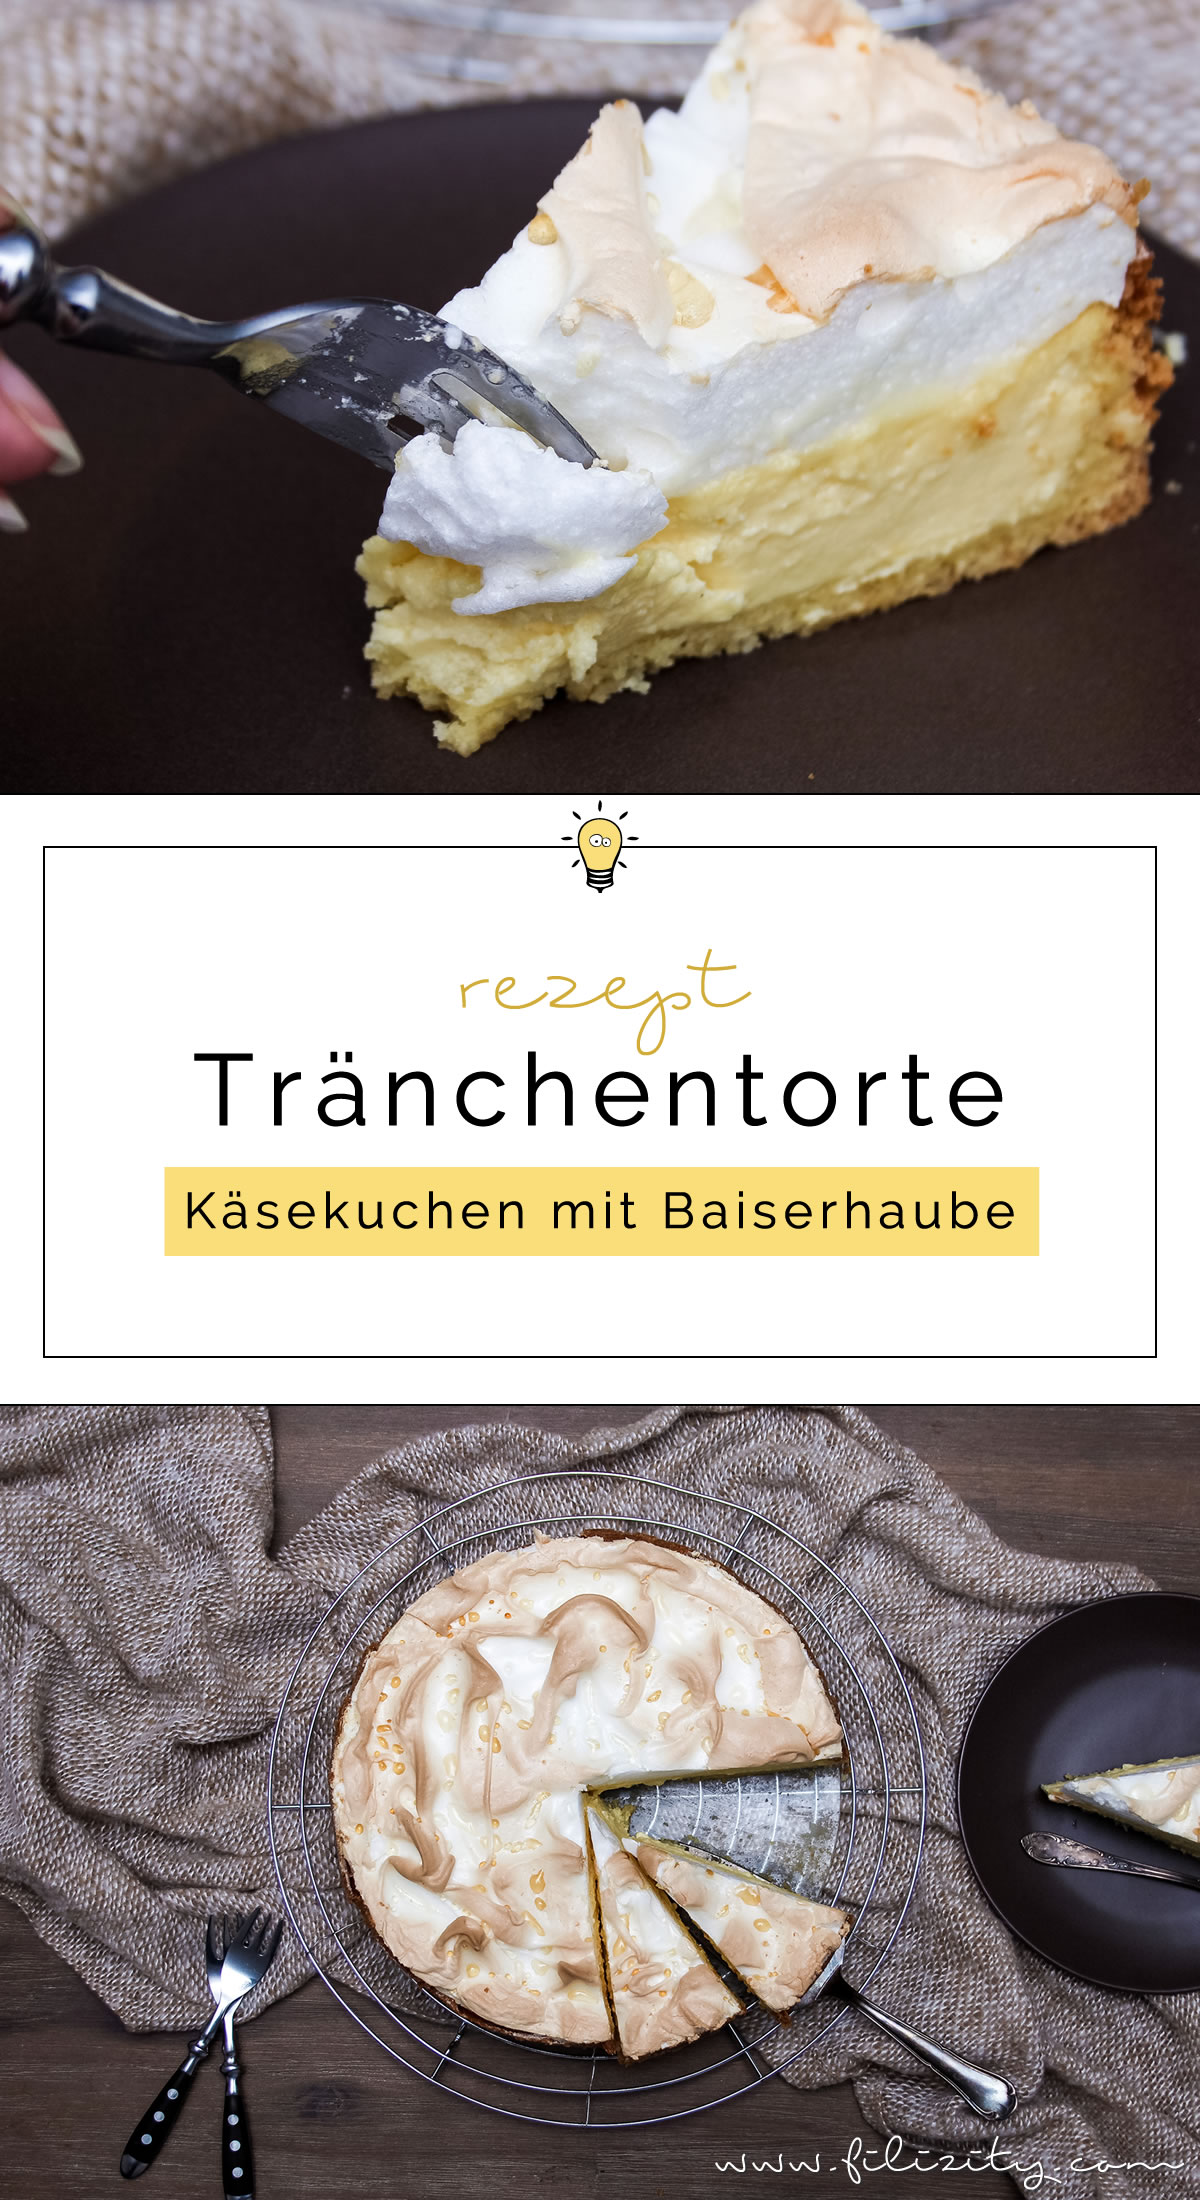 Rezept: Tränchentorte - Käsekuchen mit Baiserhaube | Filizity.com | Food-Blog aus dem Rheinland #cheesecake